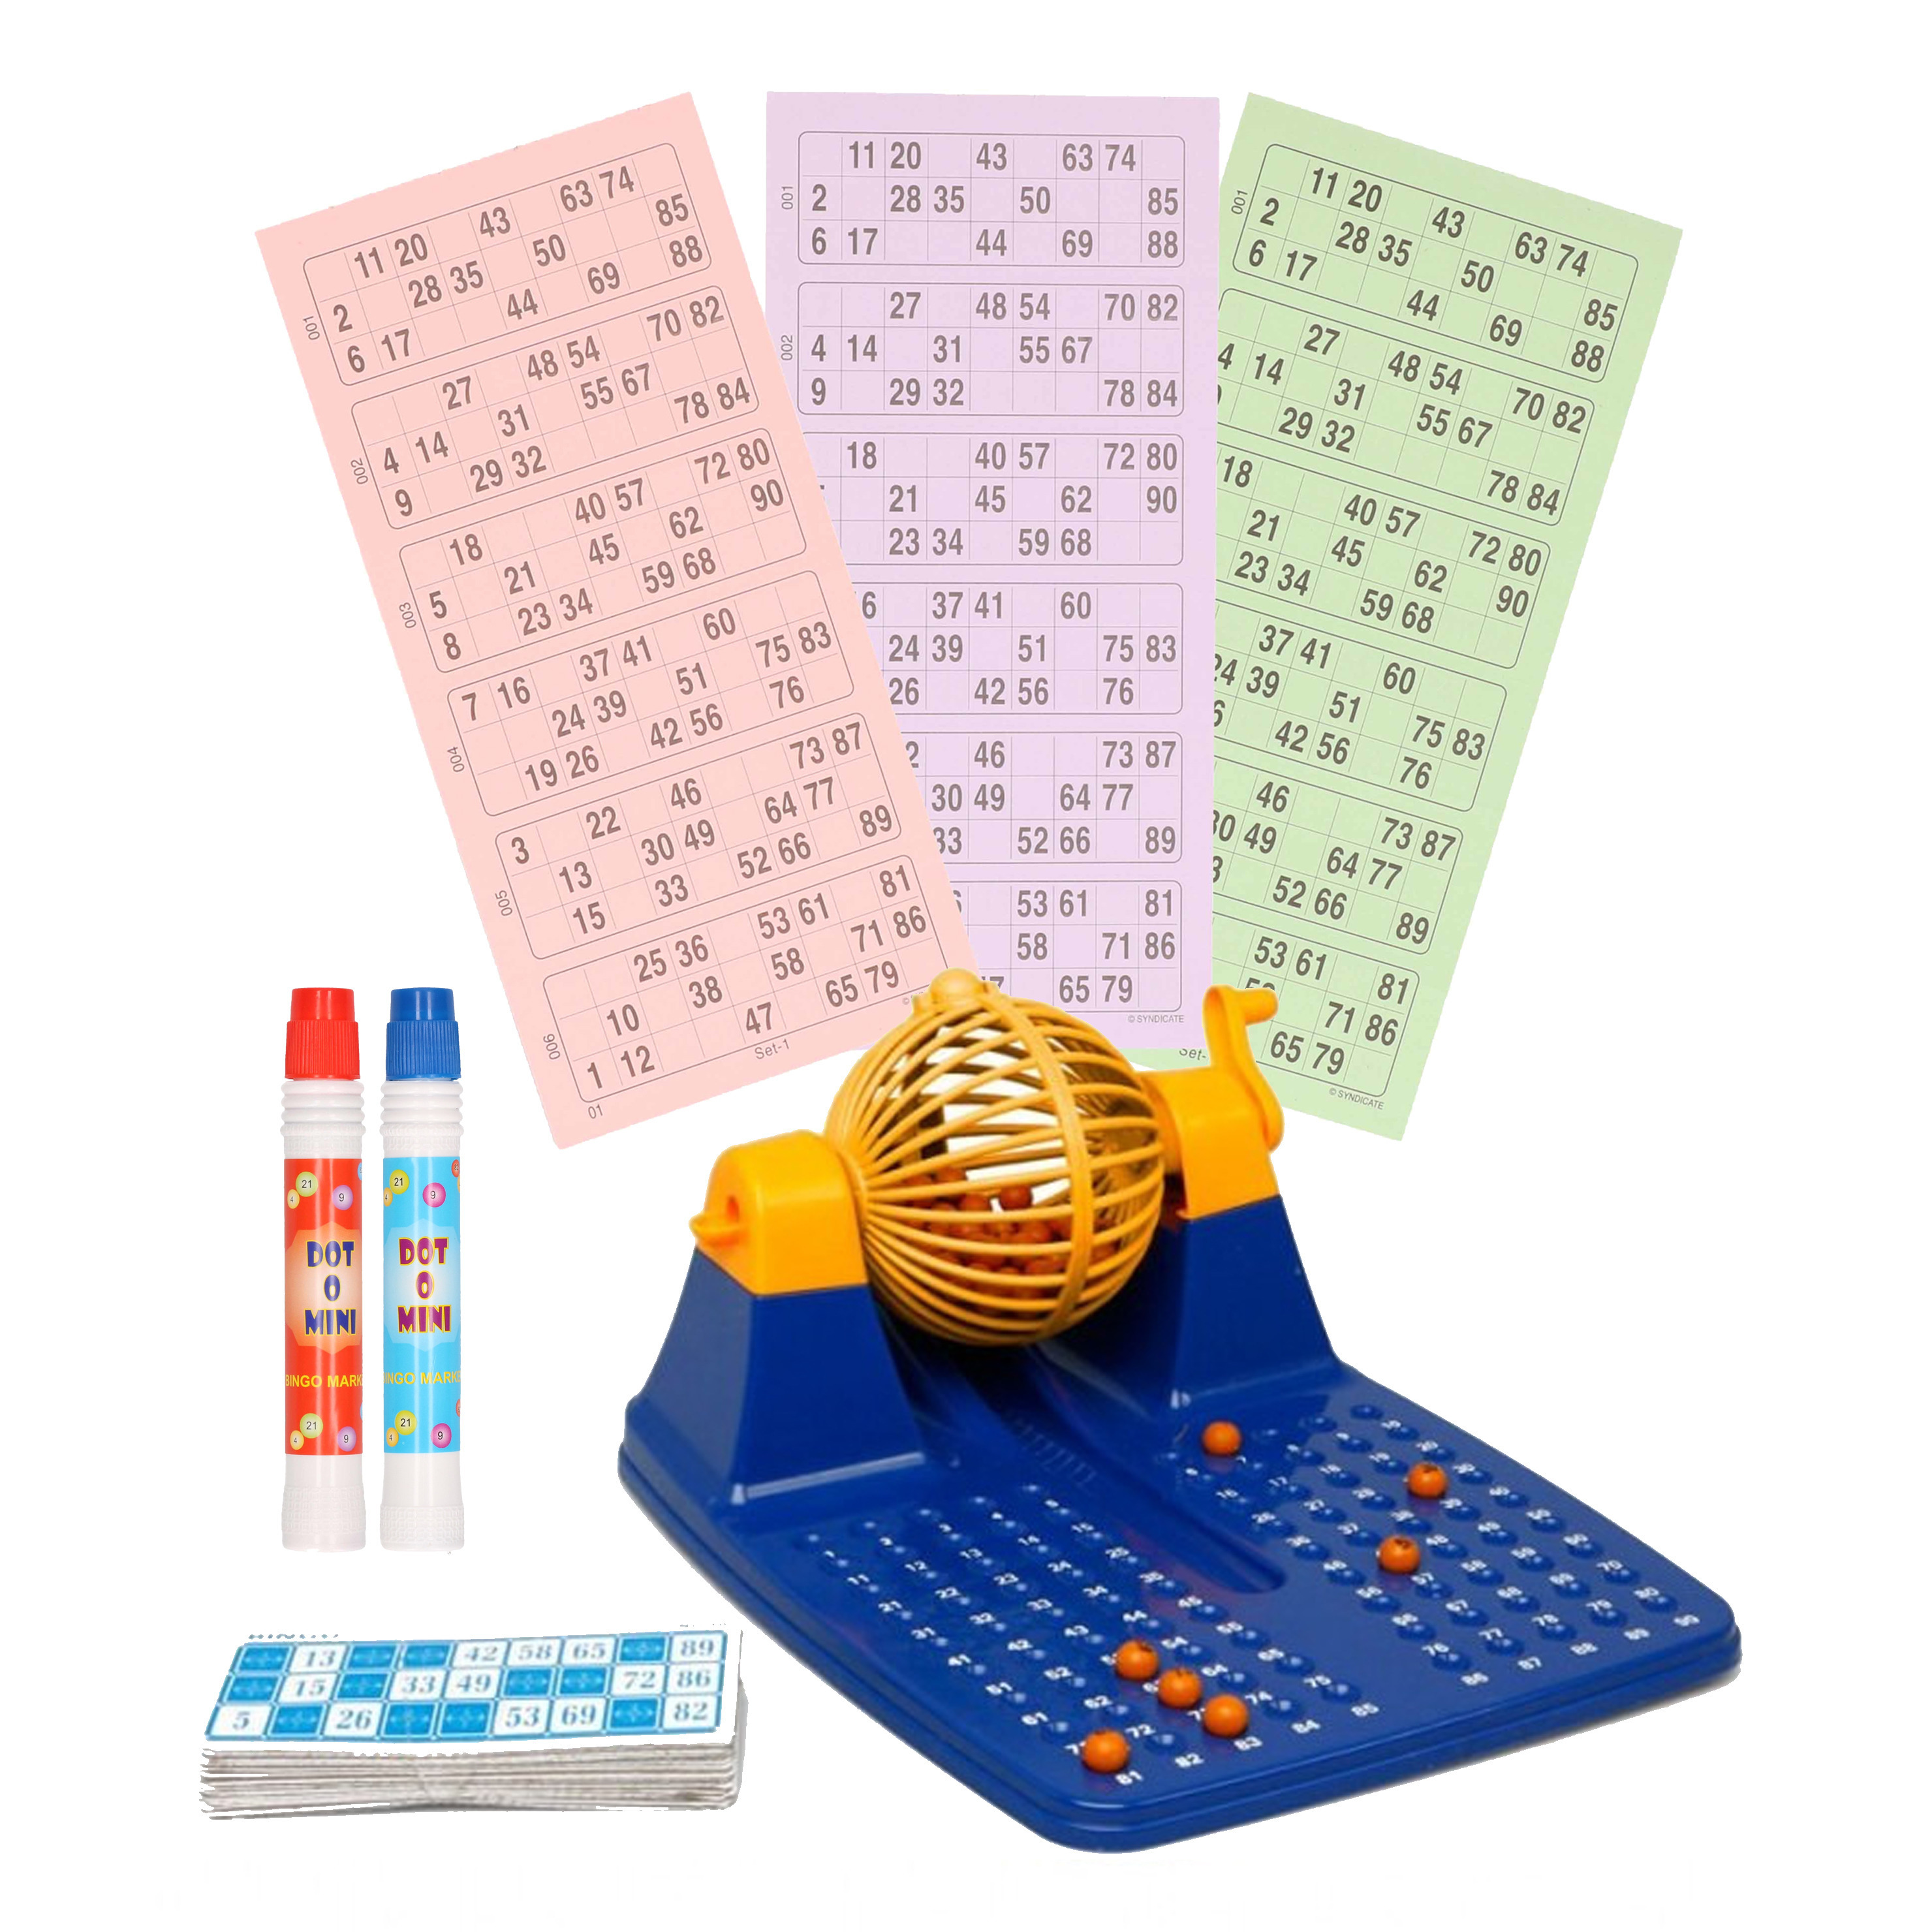 Bingospel blauw-geel-oranje 1-90 met bingomolen, 48 bingokaarten en 2 bingostiften